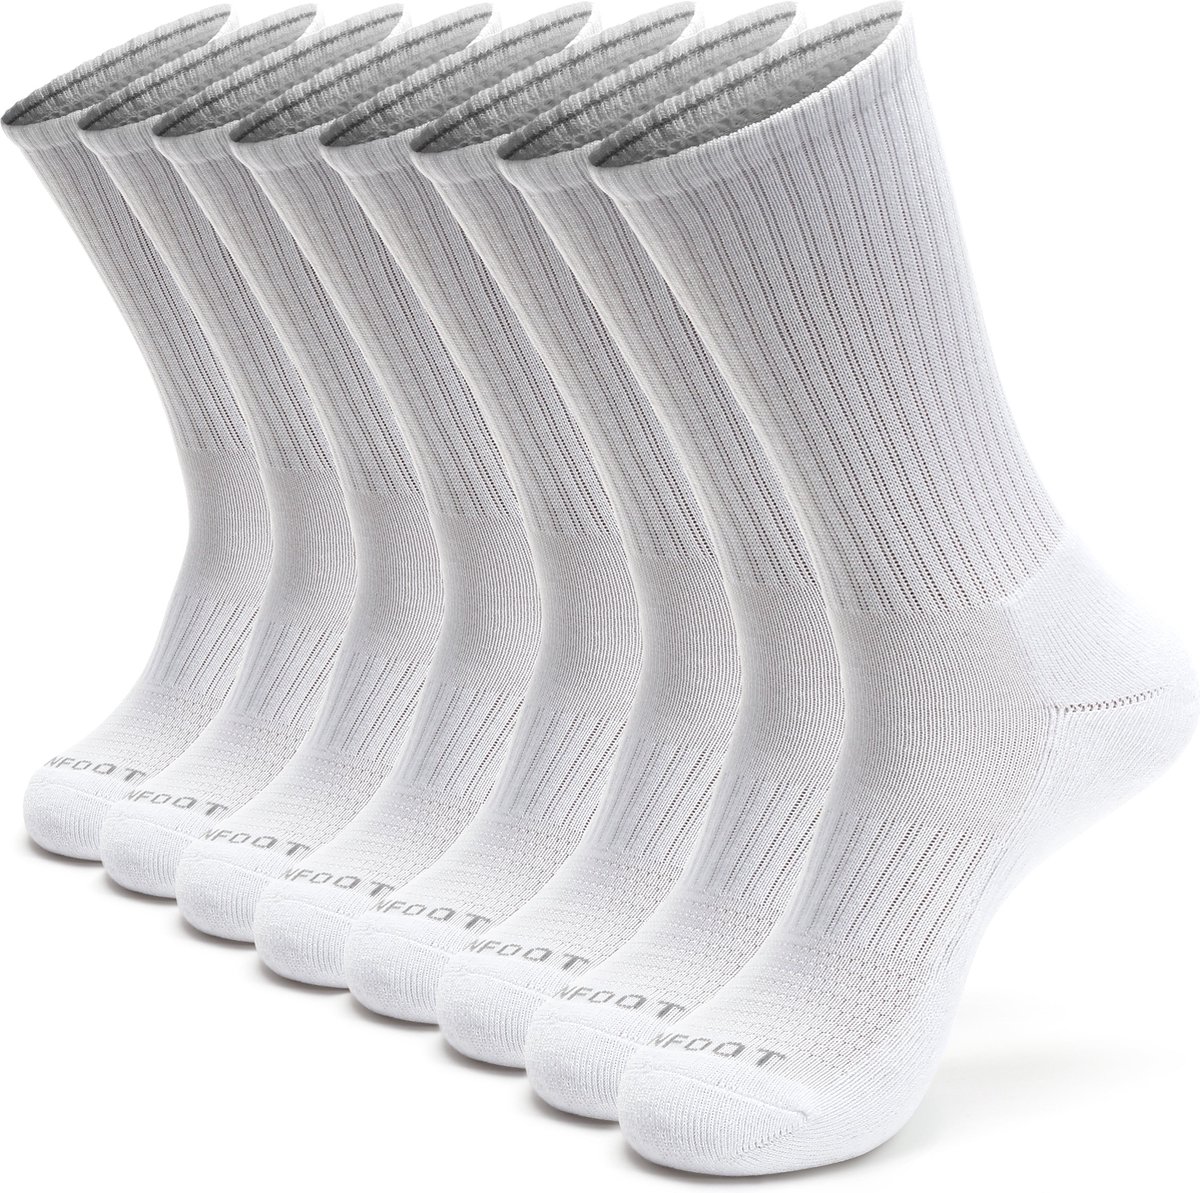 PUMA Lot de 8 paires de chaussettes basses pour homme, noir, 10-13 